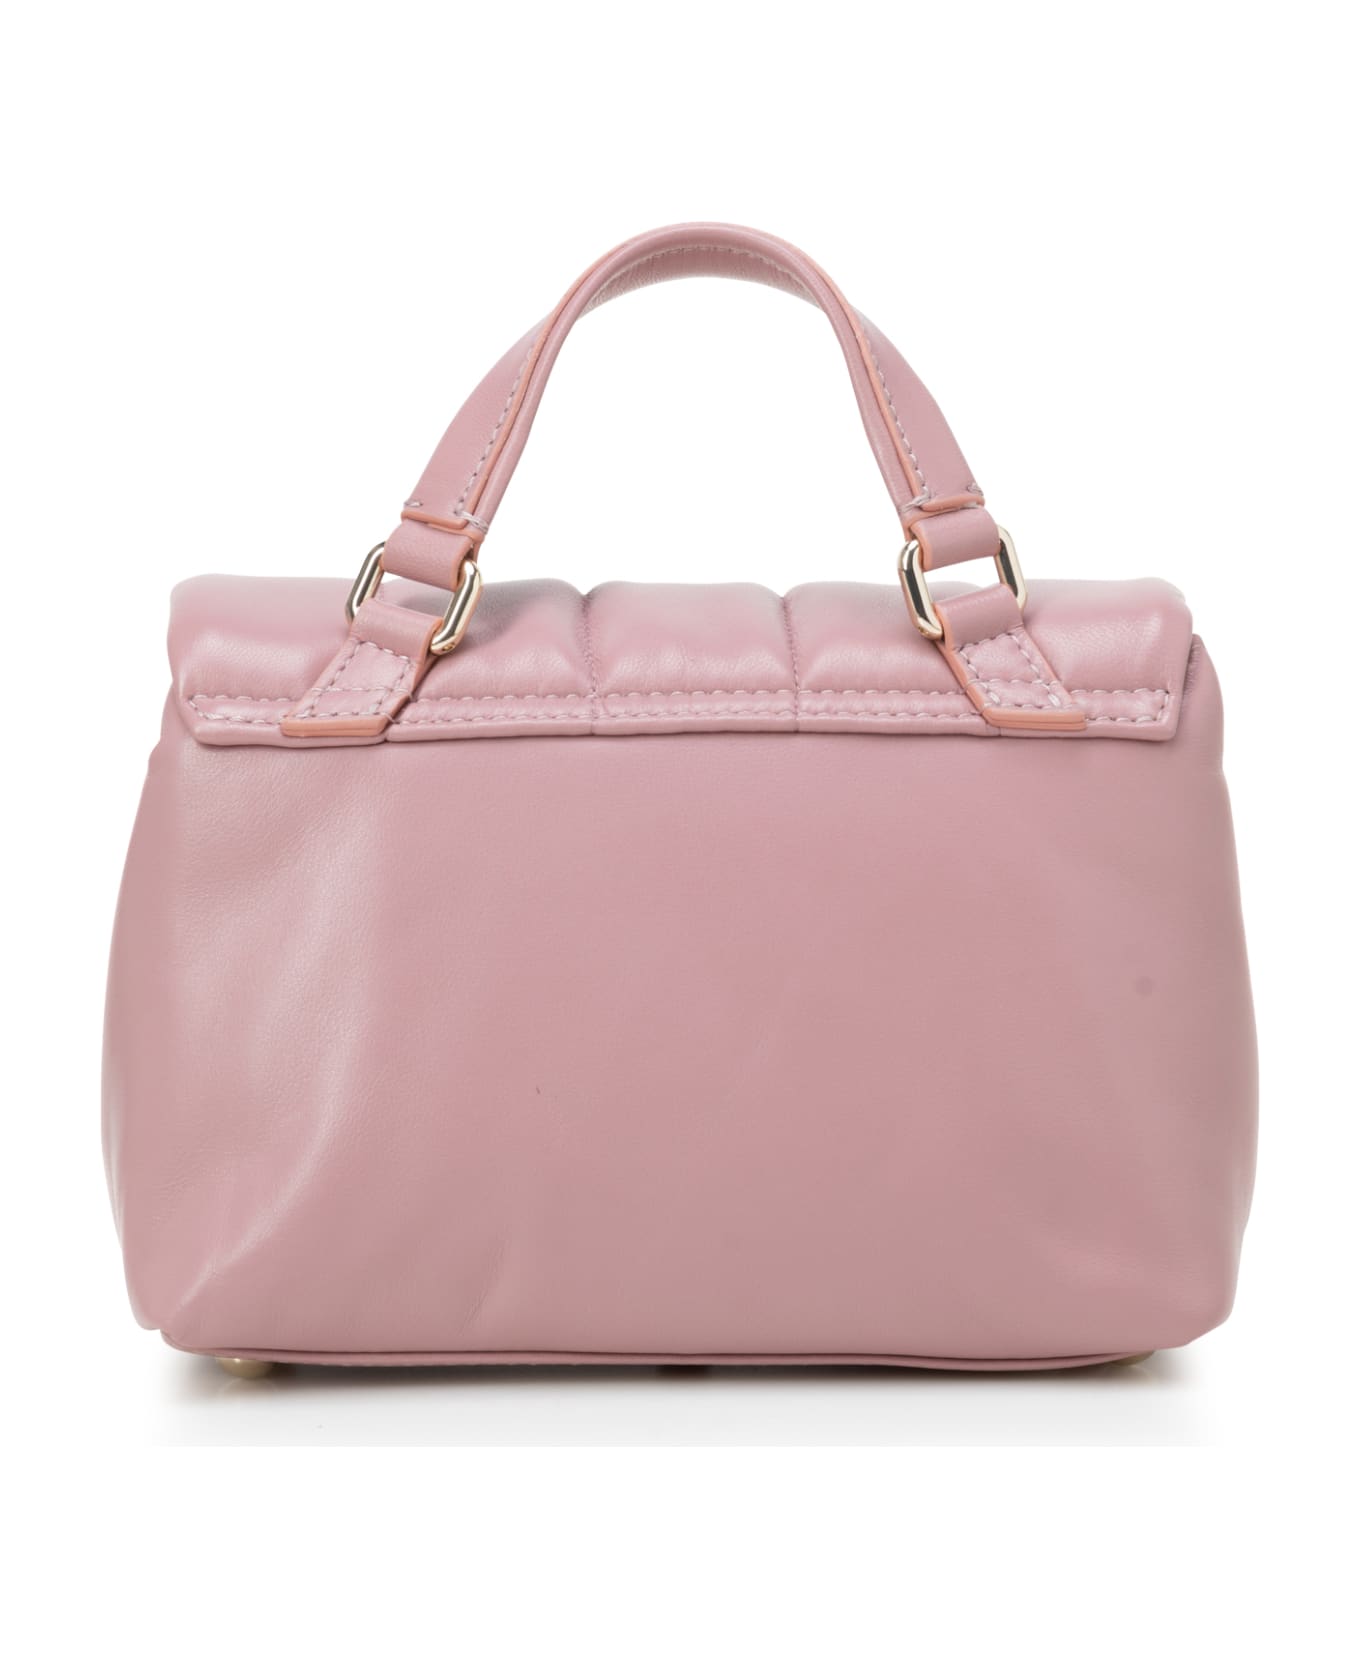 Zanellato Shoulder Bags - Legno di rosa トートバッグ